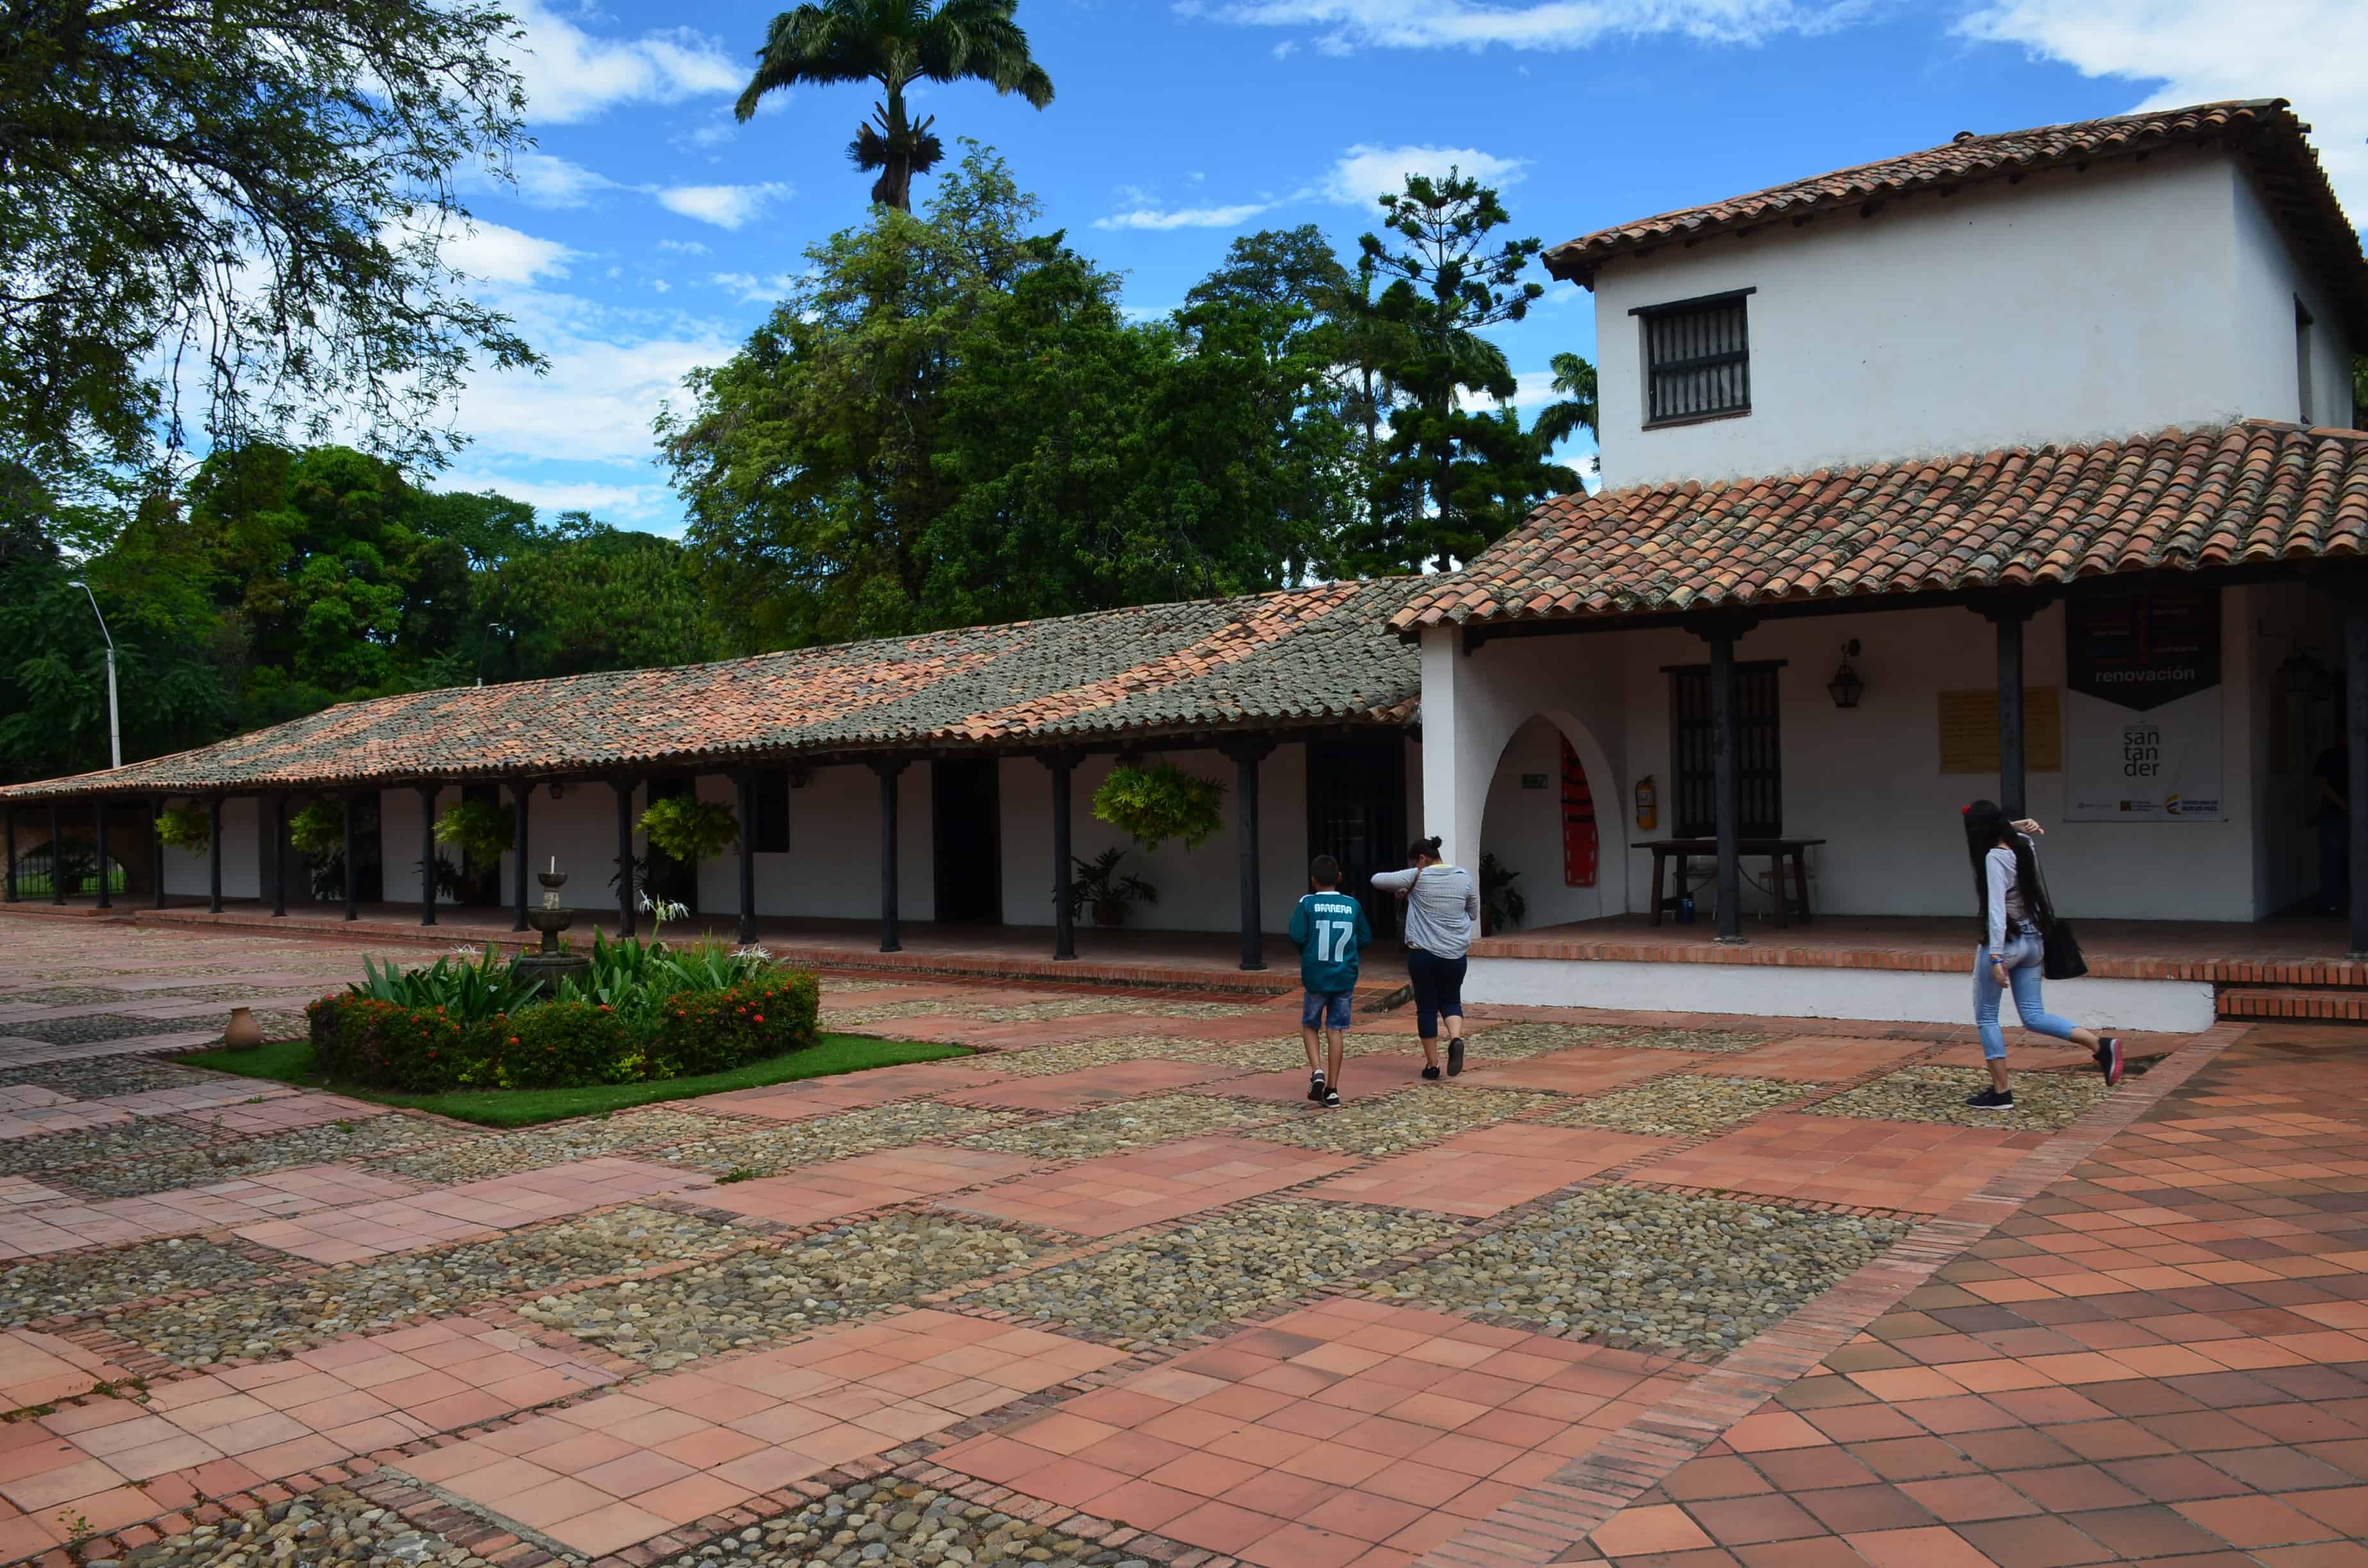 Birth House of General Santander in Villa del Rosario, Norte de Santander, Colombia